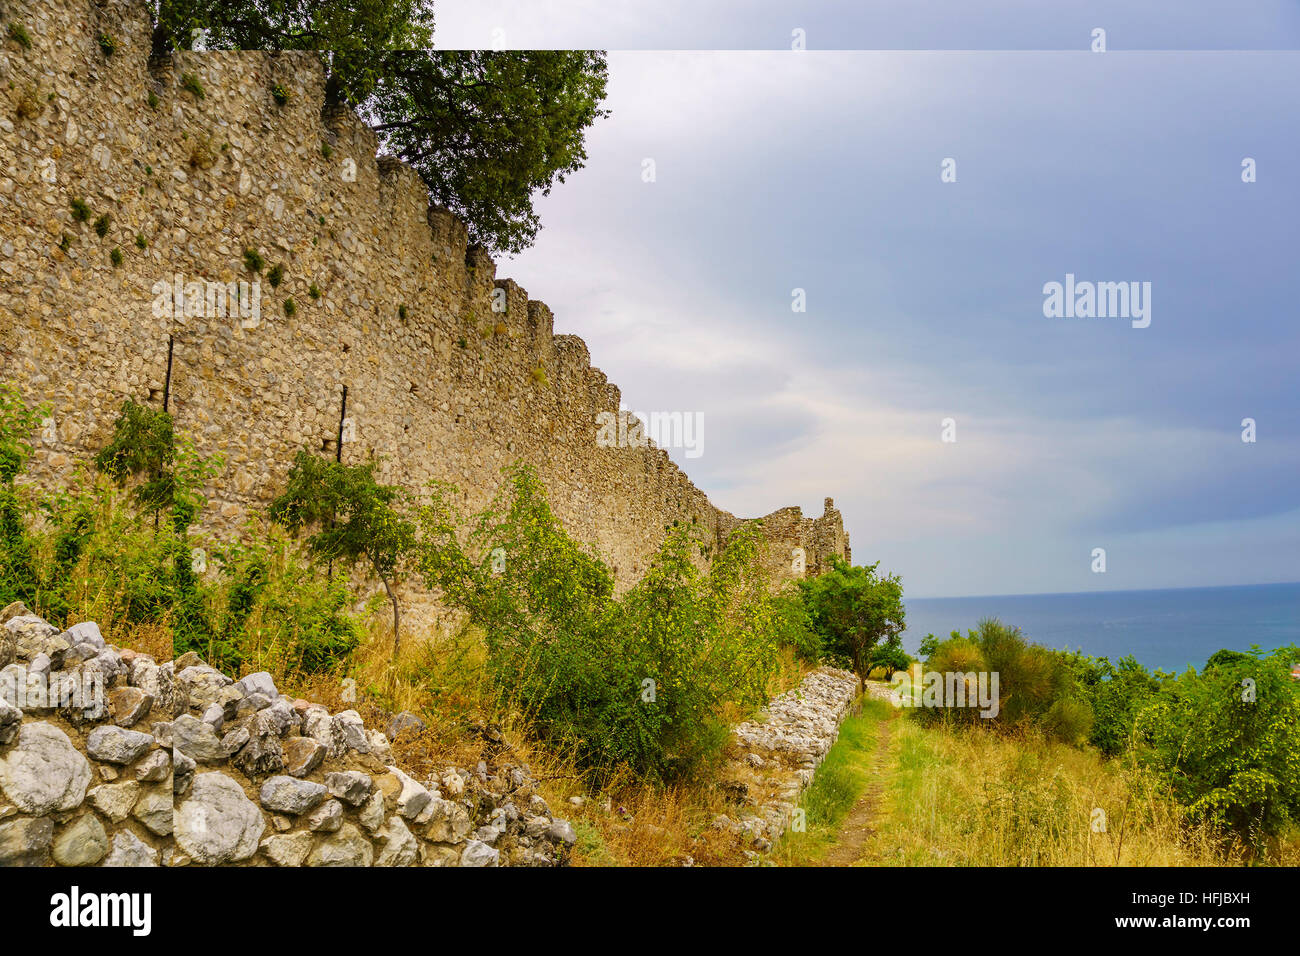 Il famoso castello di Platamonas. Si tratta di un castello dei crociati nella Grecia settentrionale situato a sud-est del Monte Olimpo vicino a Katerini città. Pieria - Grecia Foto Stock